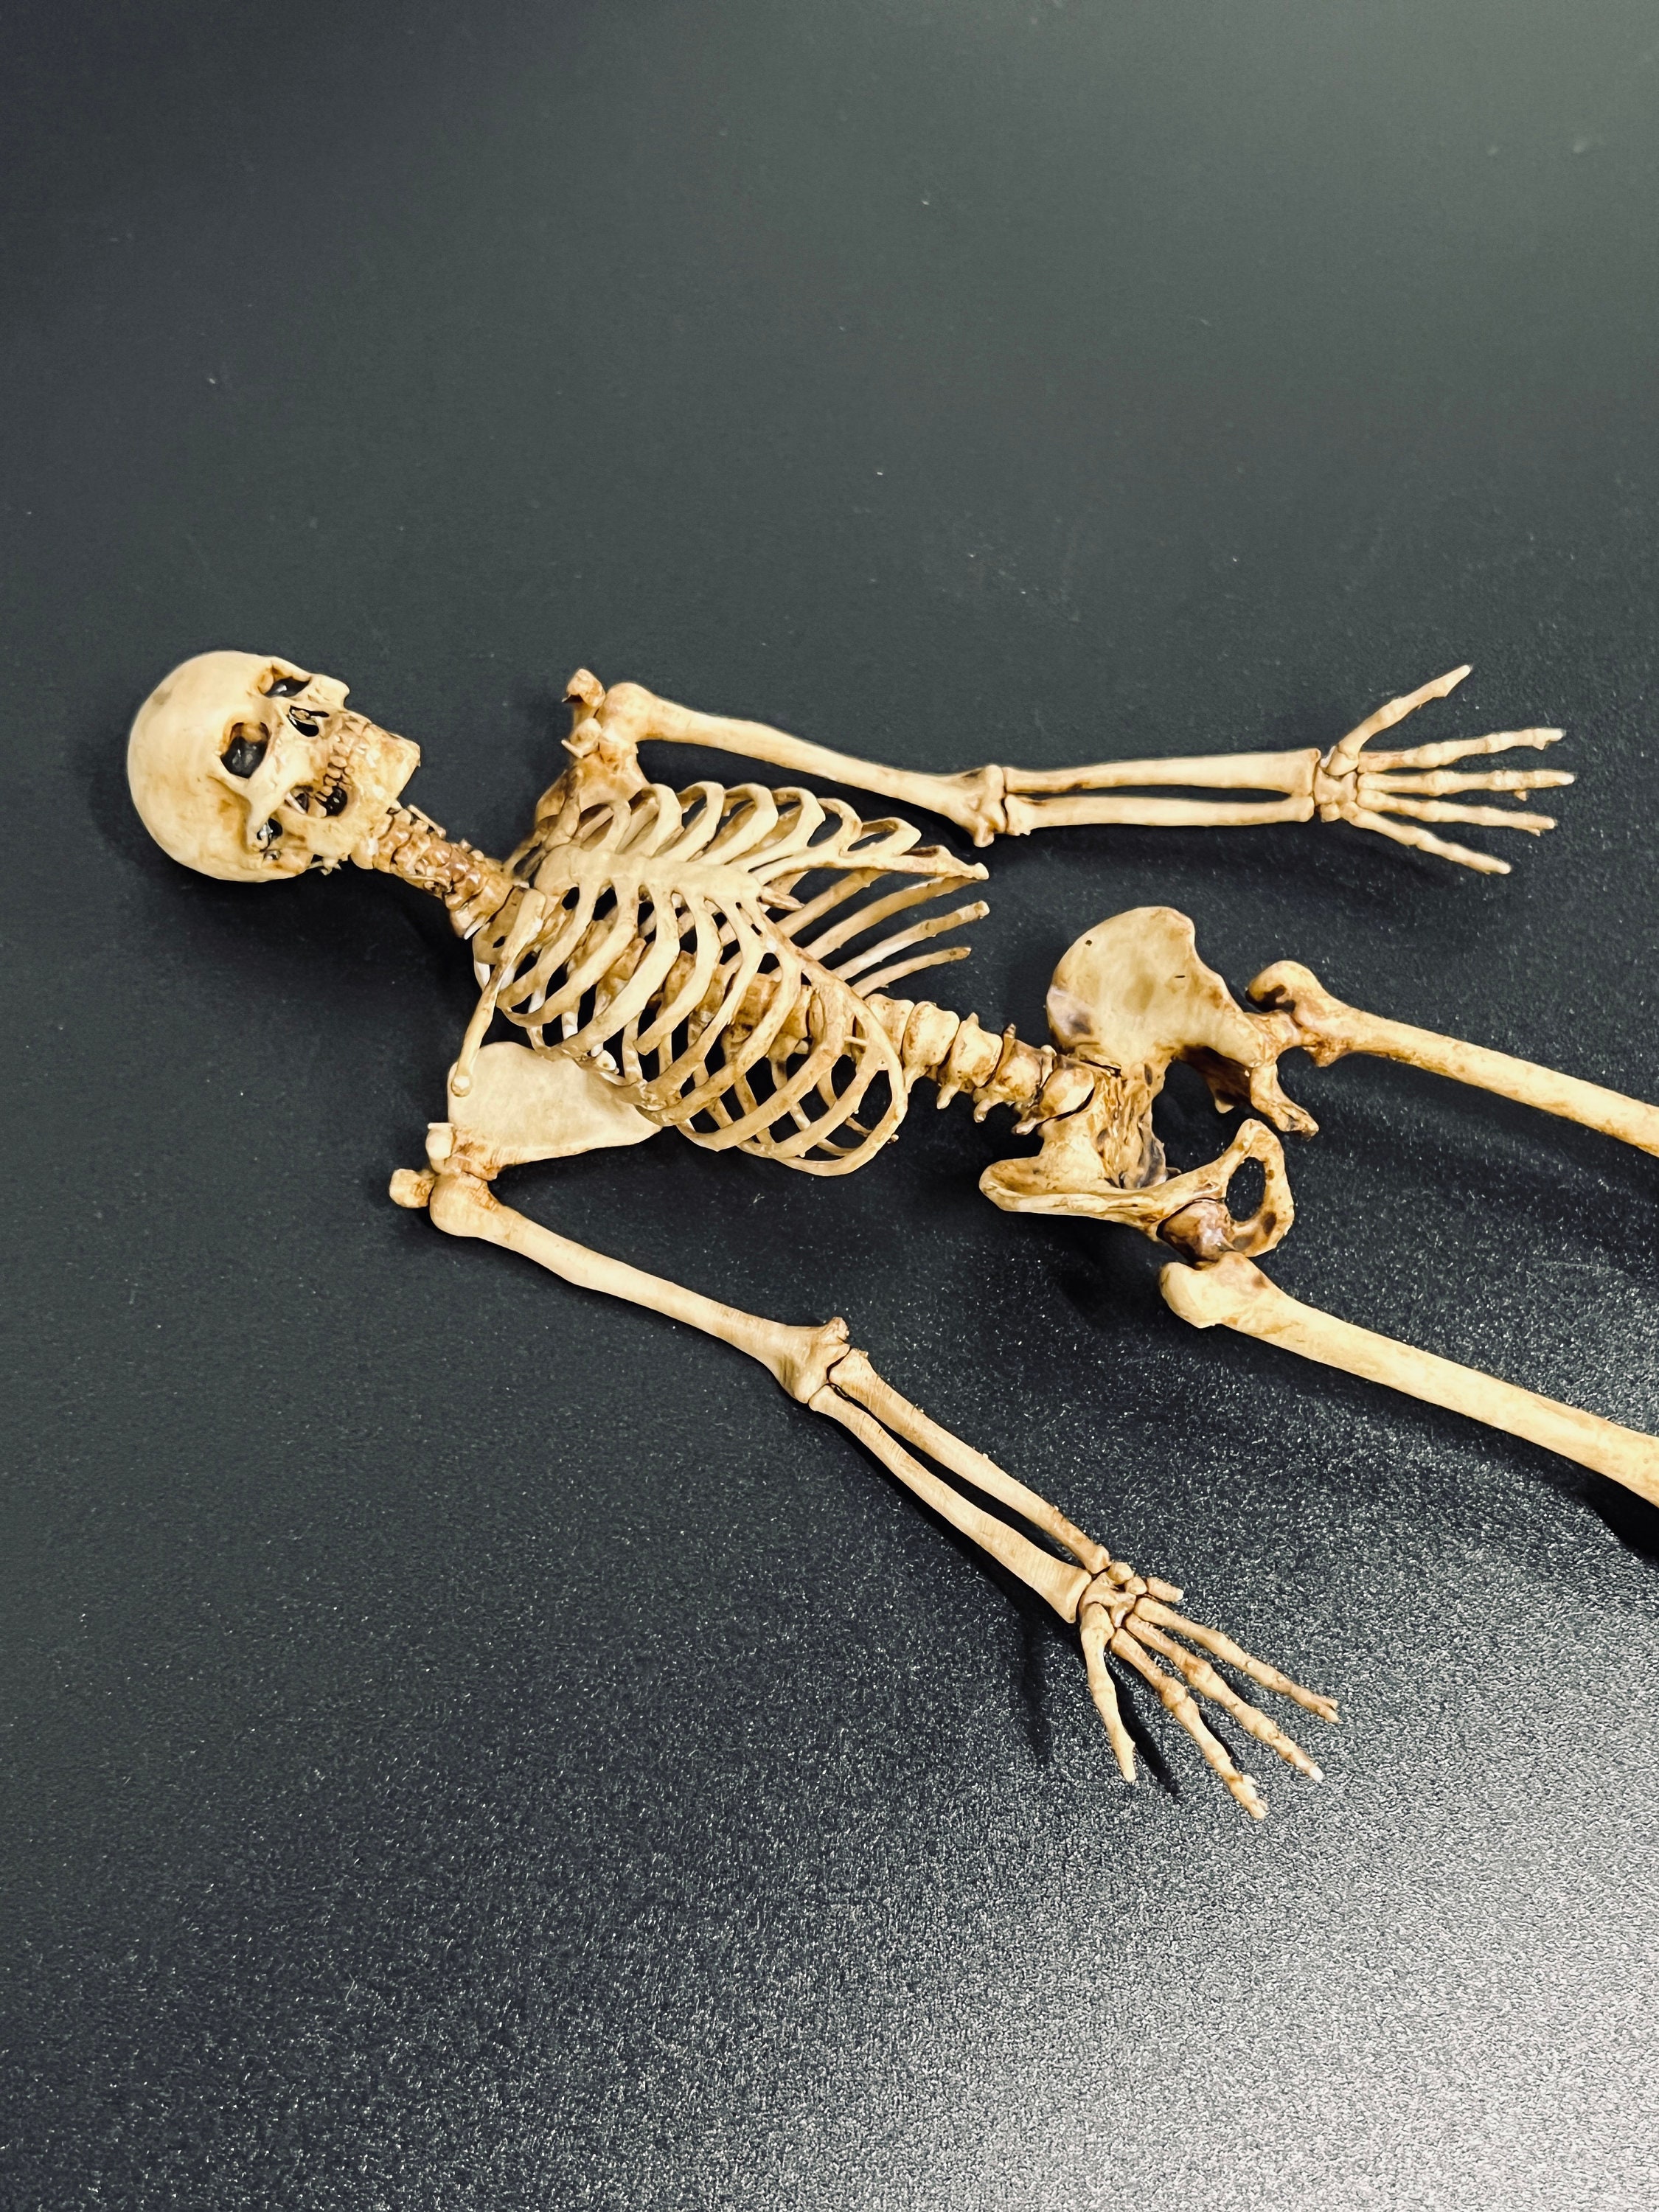 Joli squelette d'acteur Flexi imprimé sur place STL pour impression 3D -   France